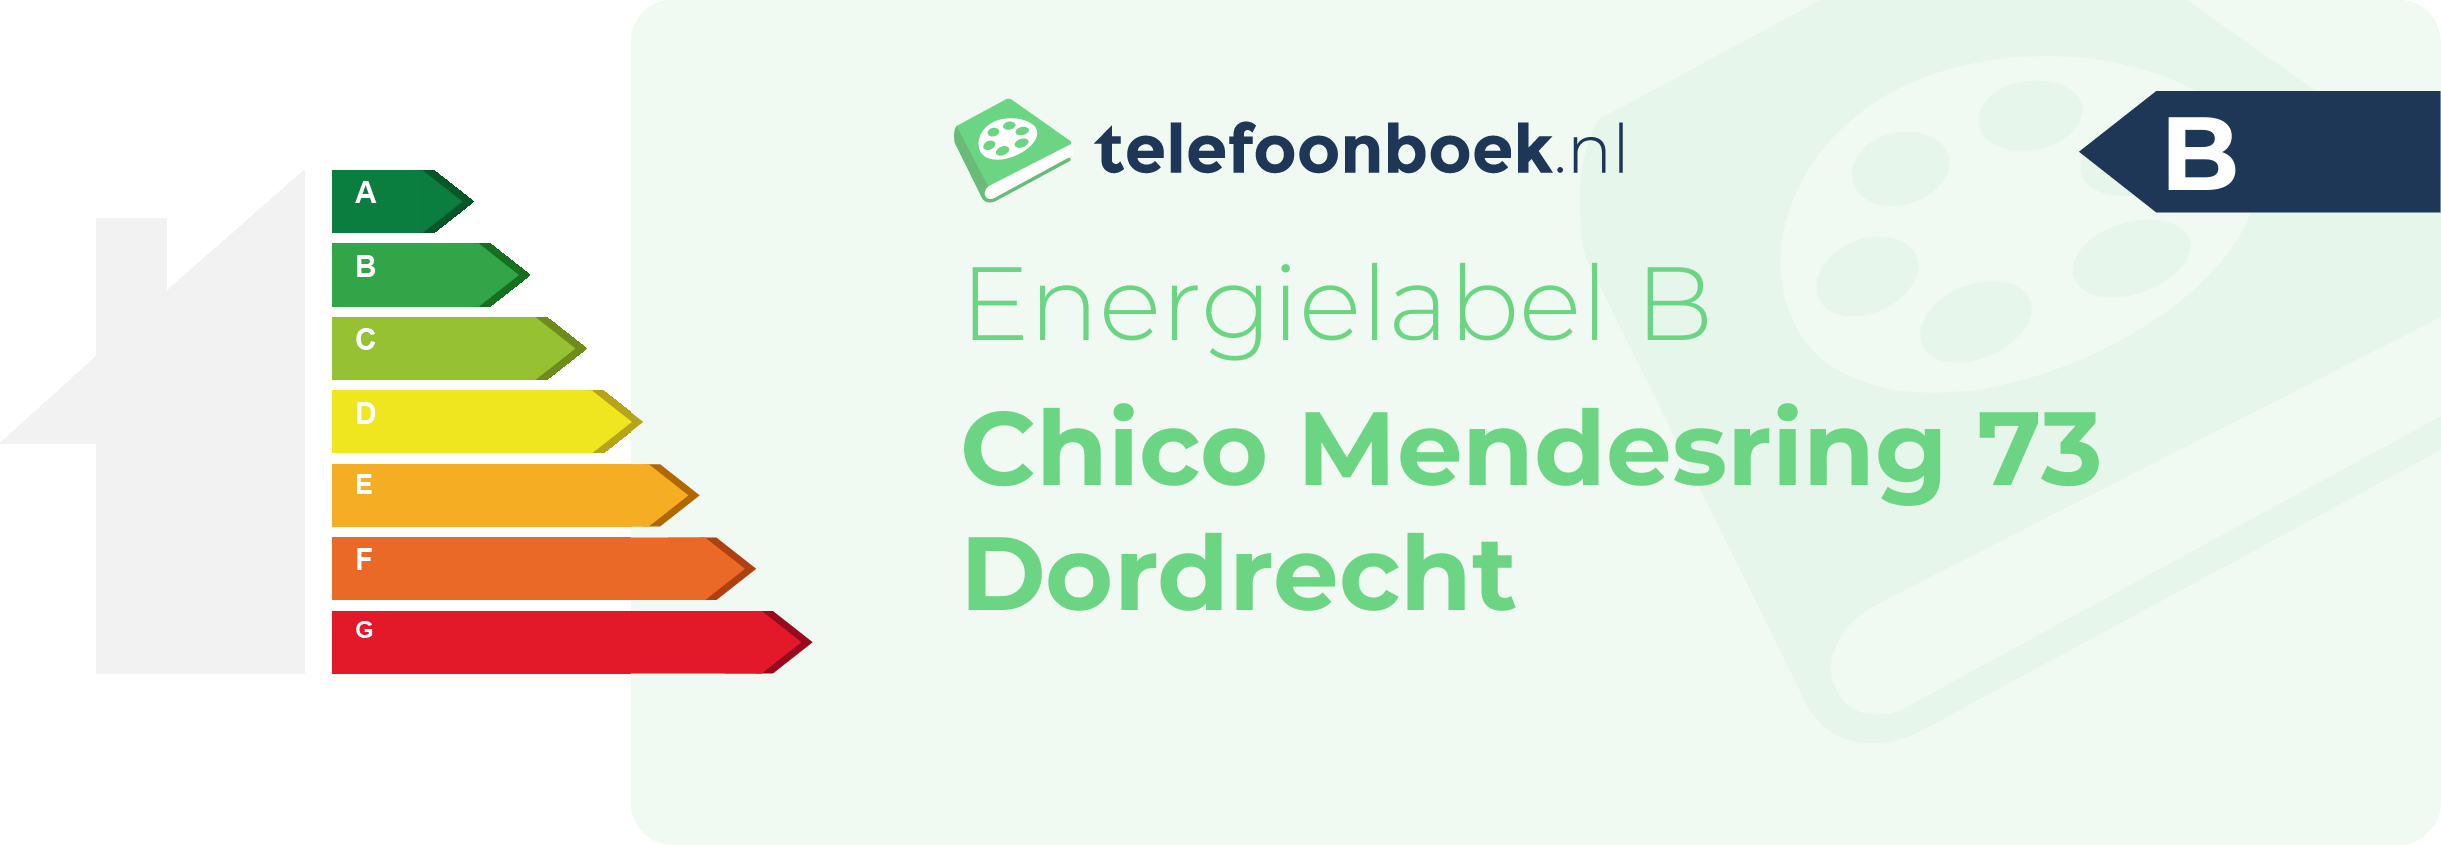 Energielabel Chico Mendesring 73 Dordrecht